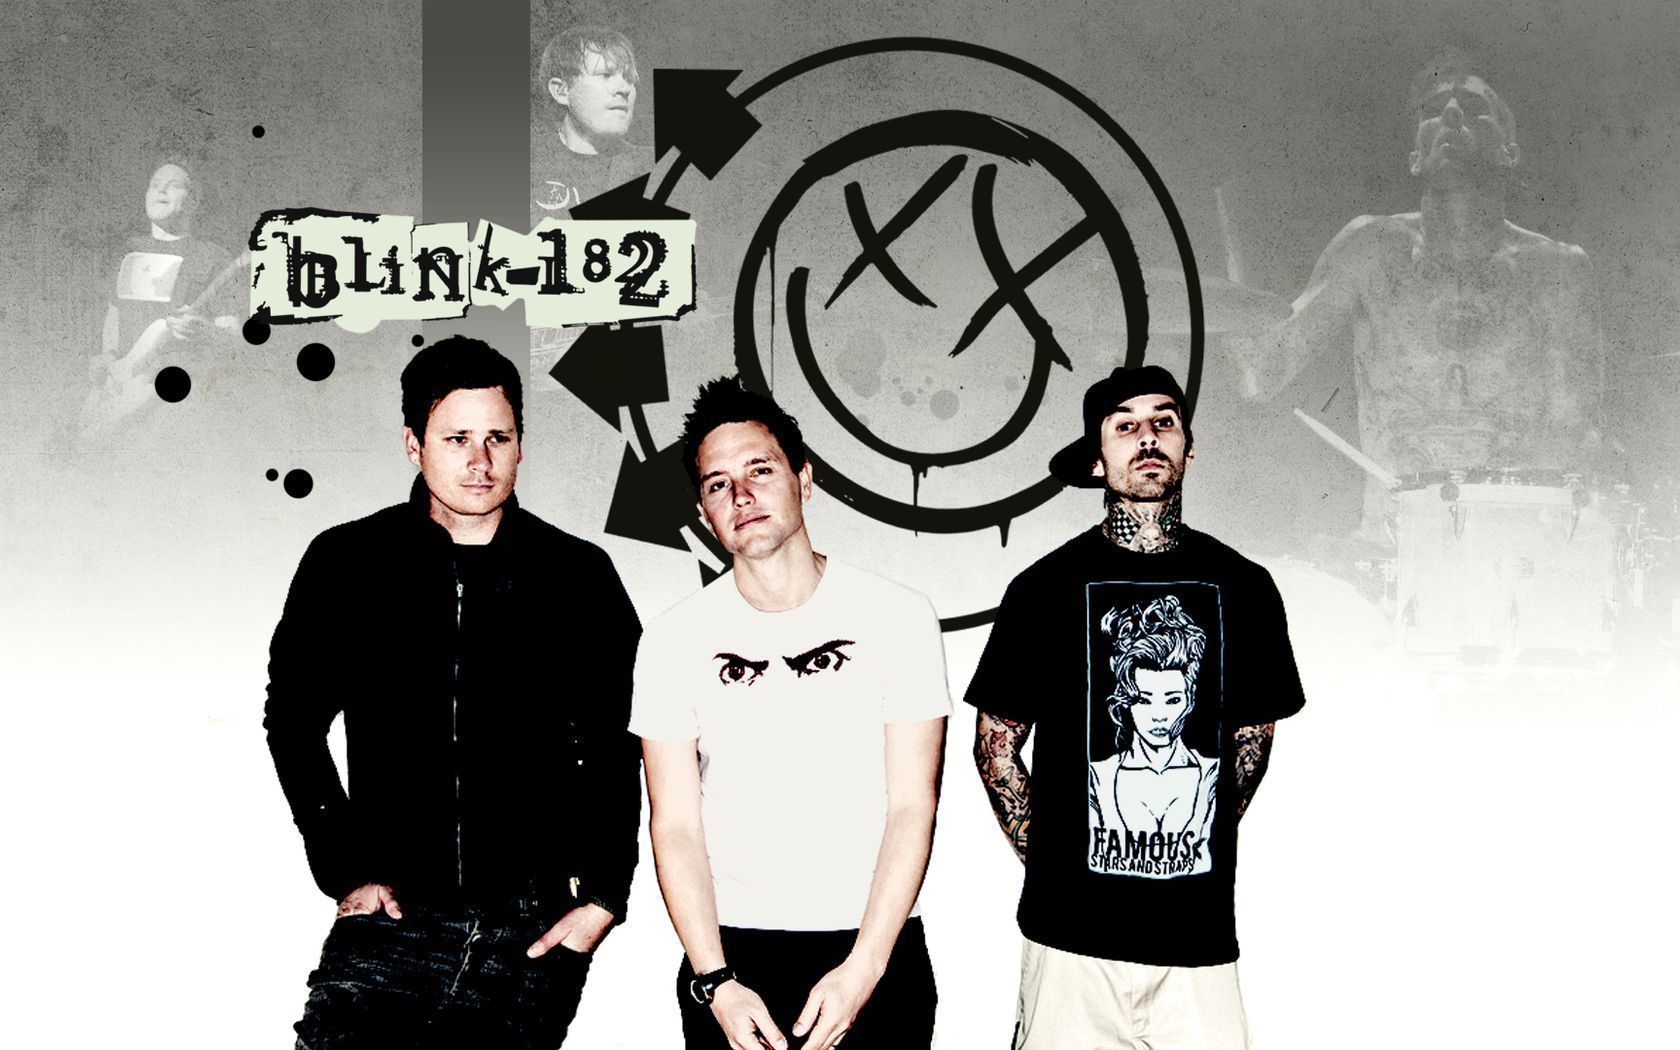 Blink-182 Album Wallpapers - 1680x1050 - 909898